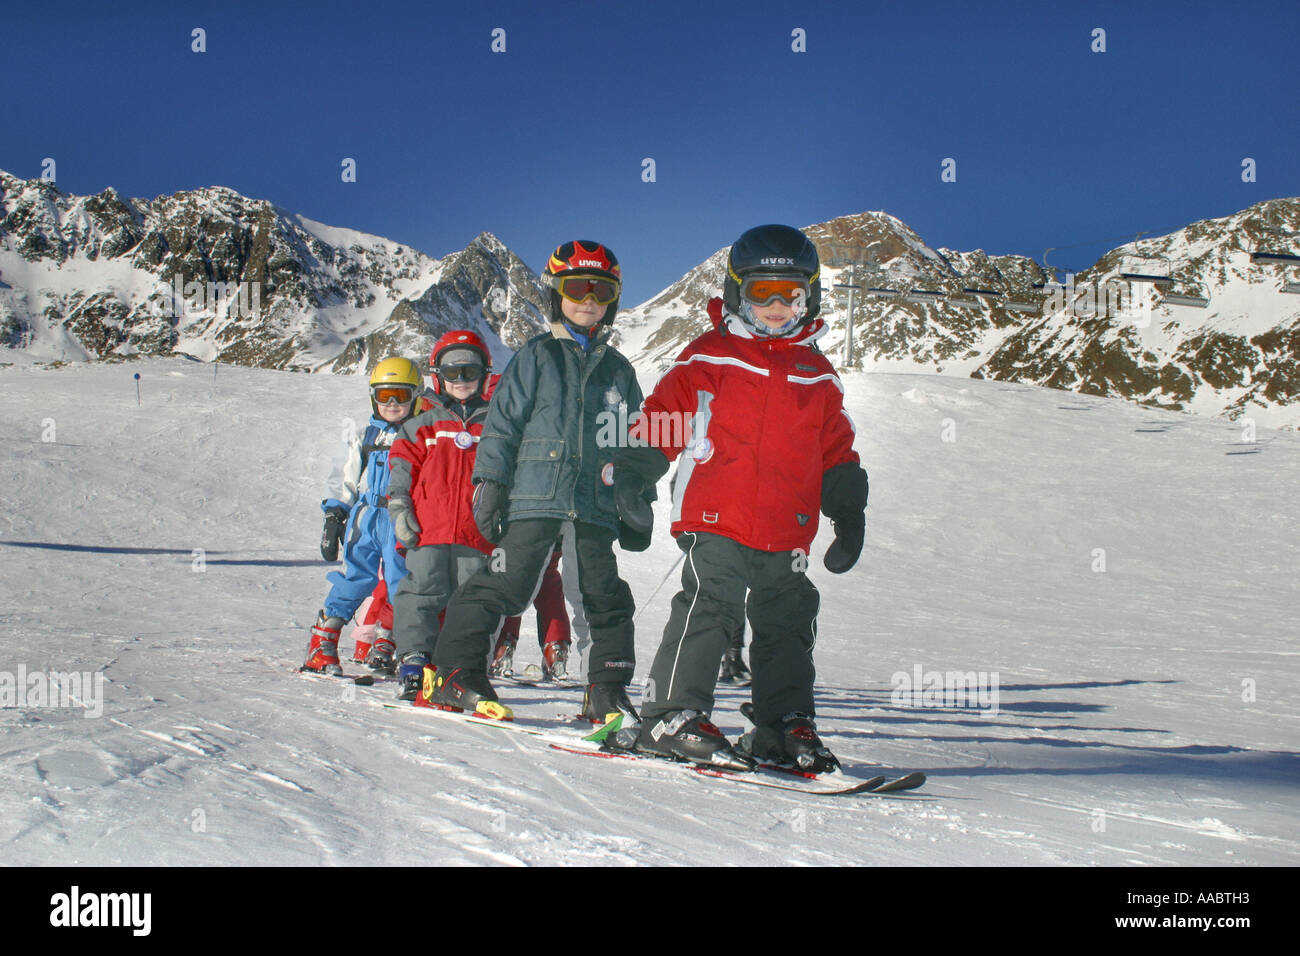 children skiing Stock Photo